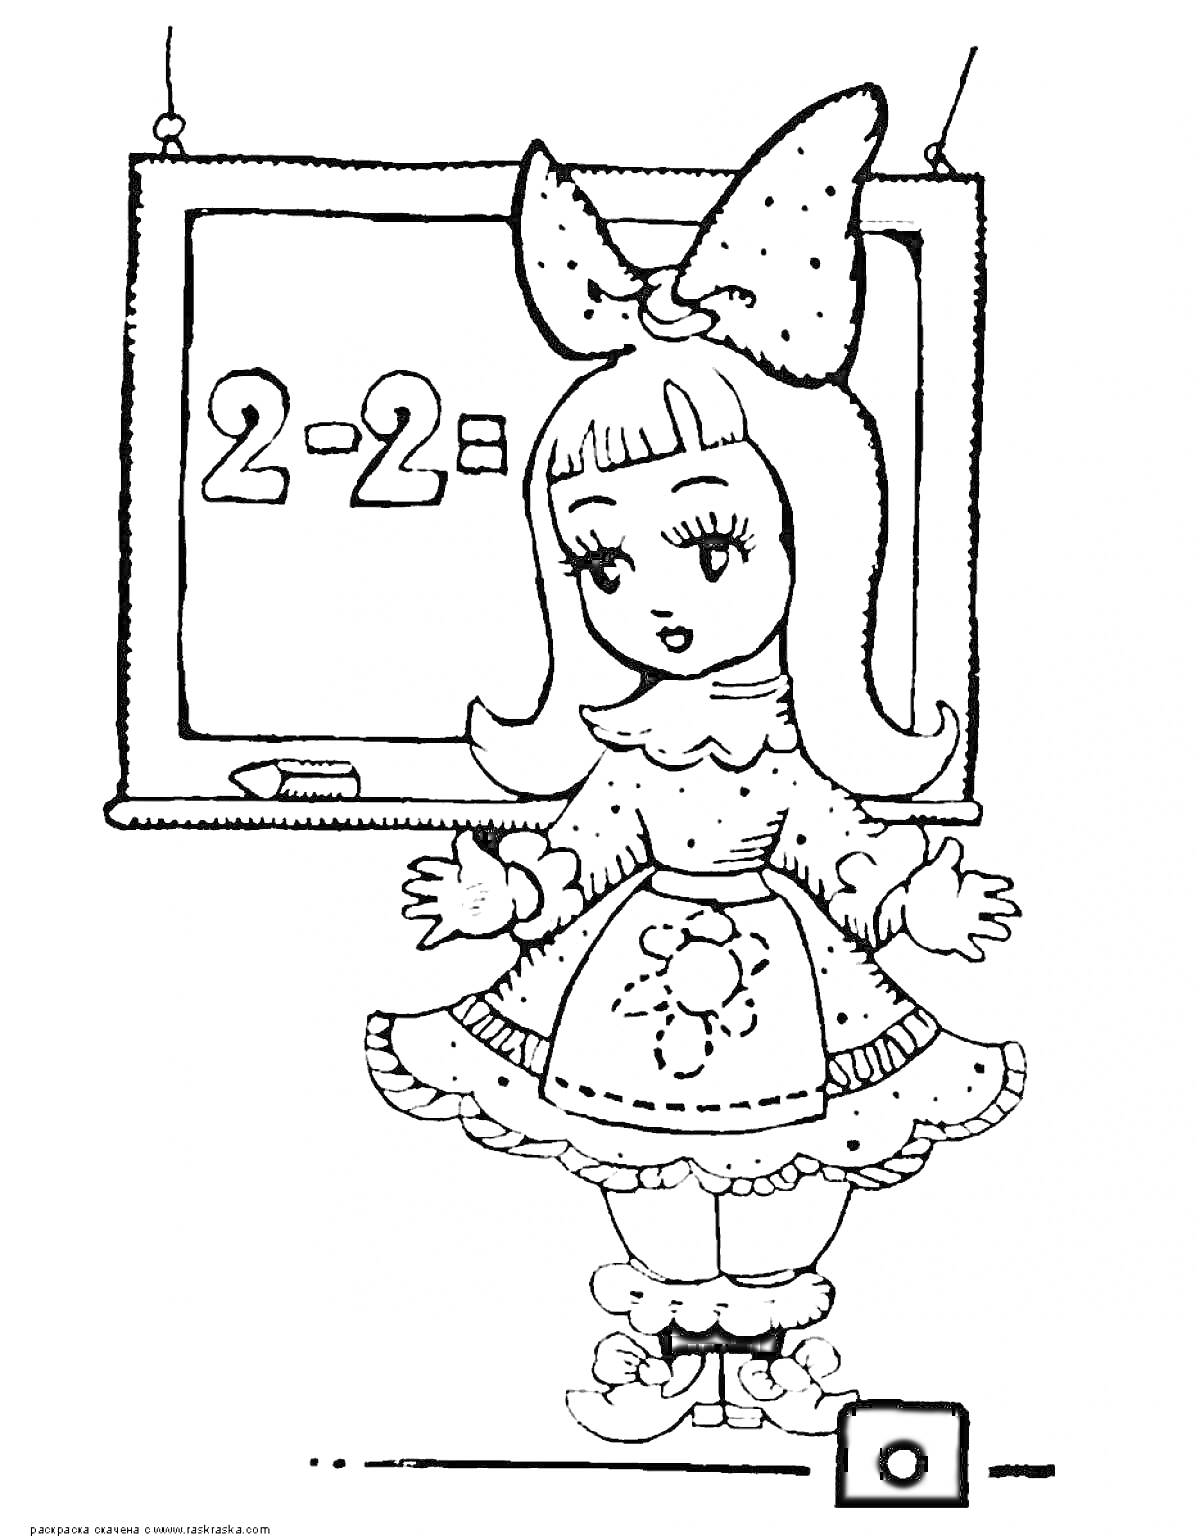 Девочка у школьной доски с математическим примером 2-2=